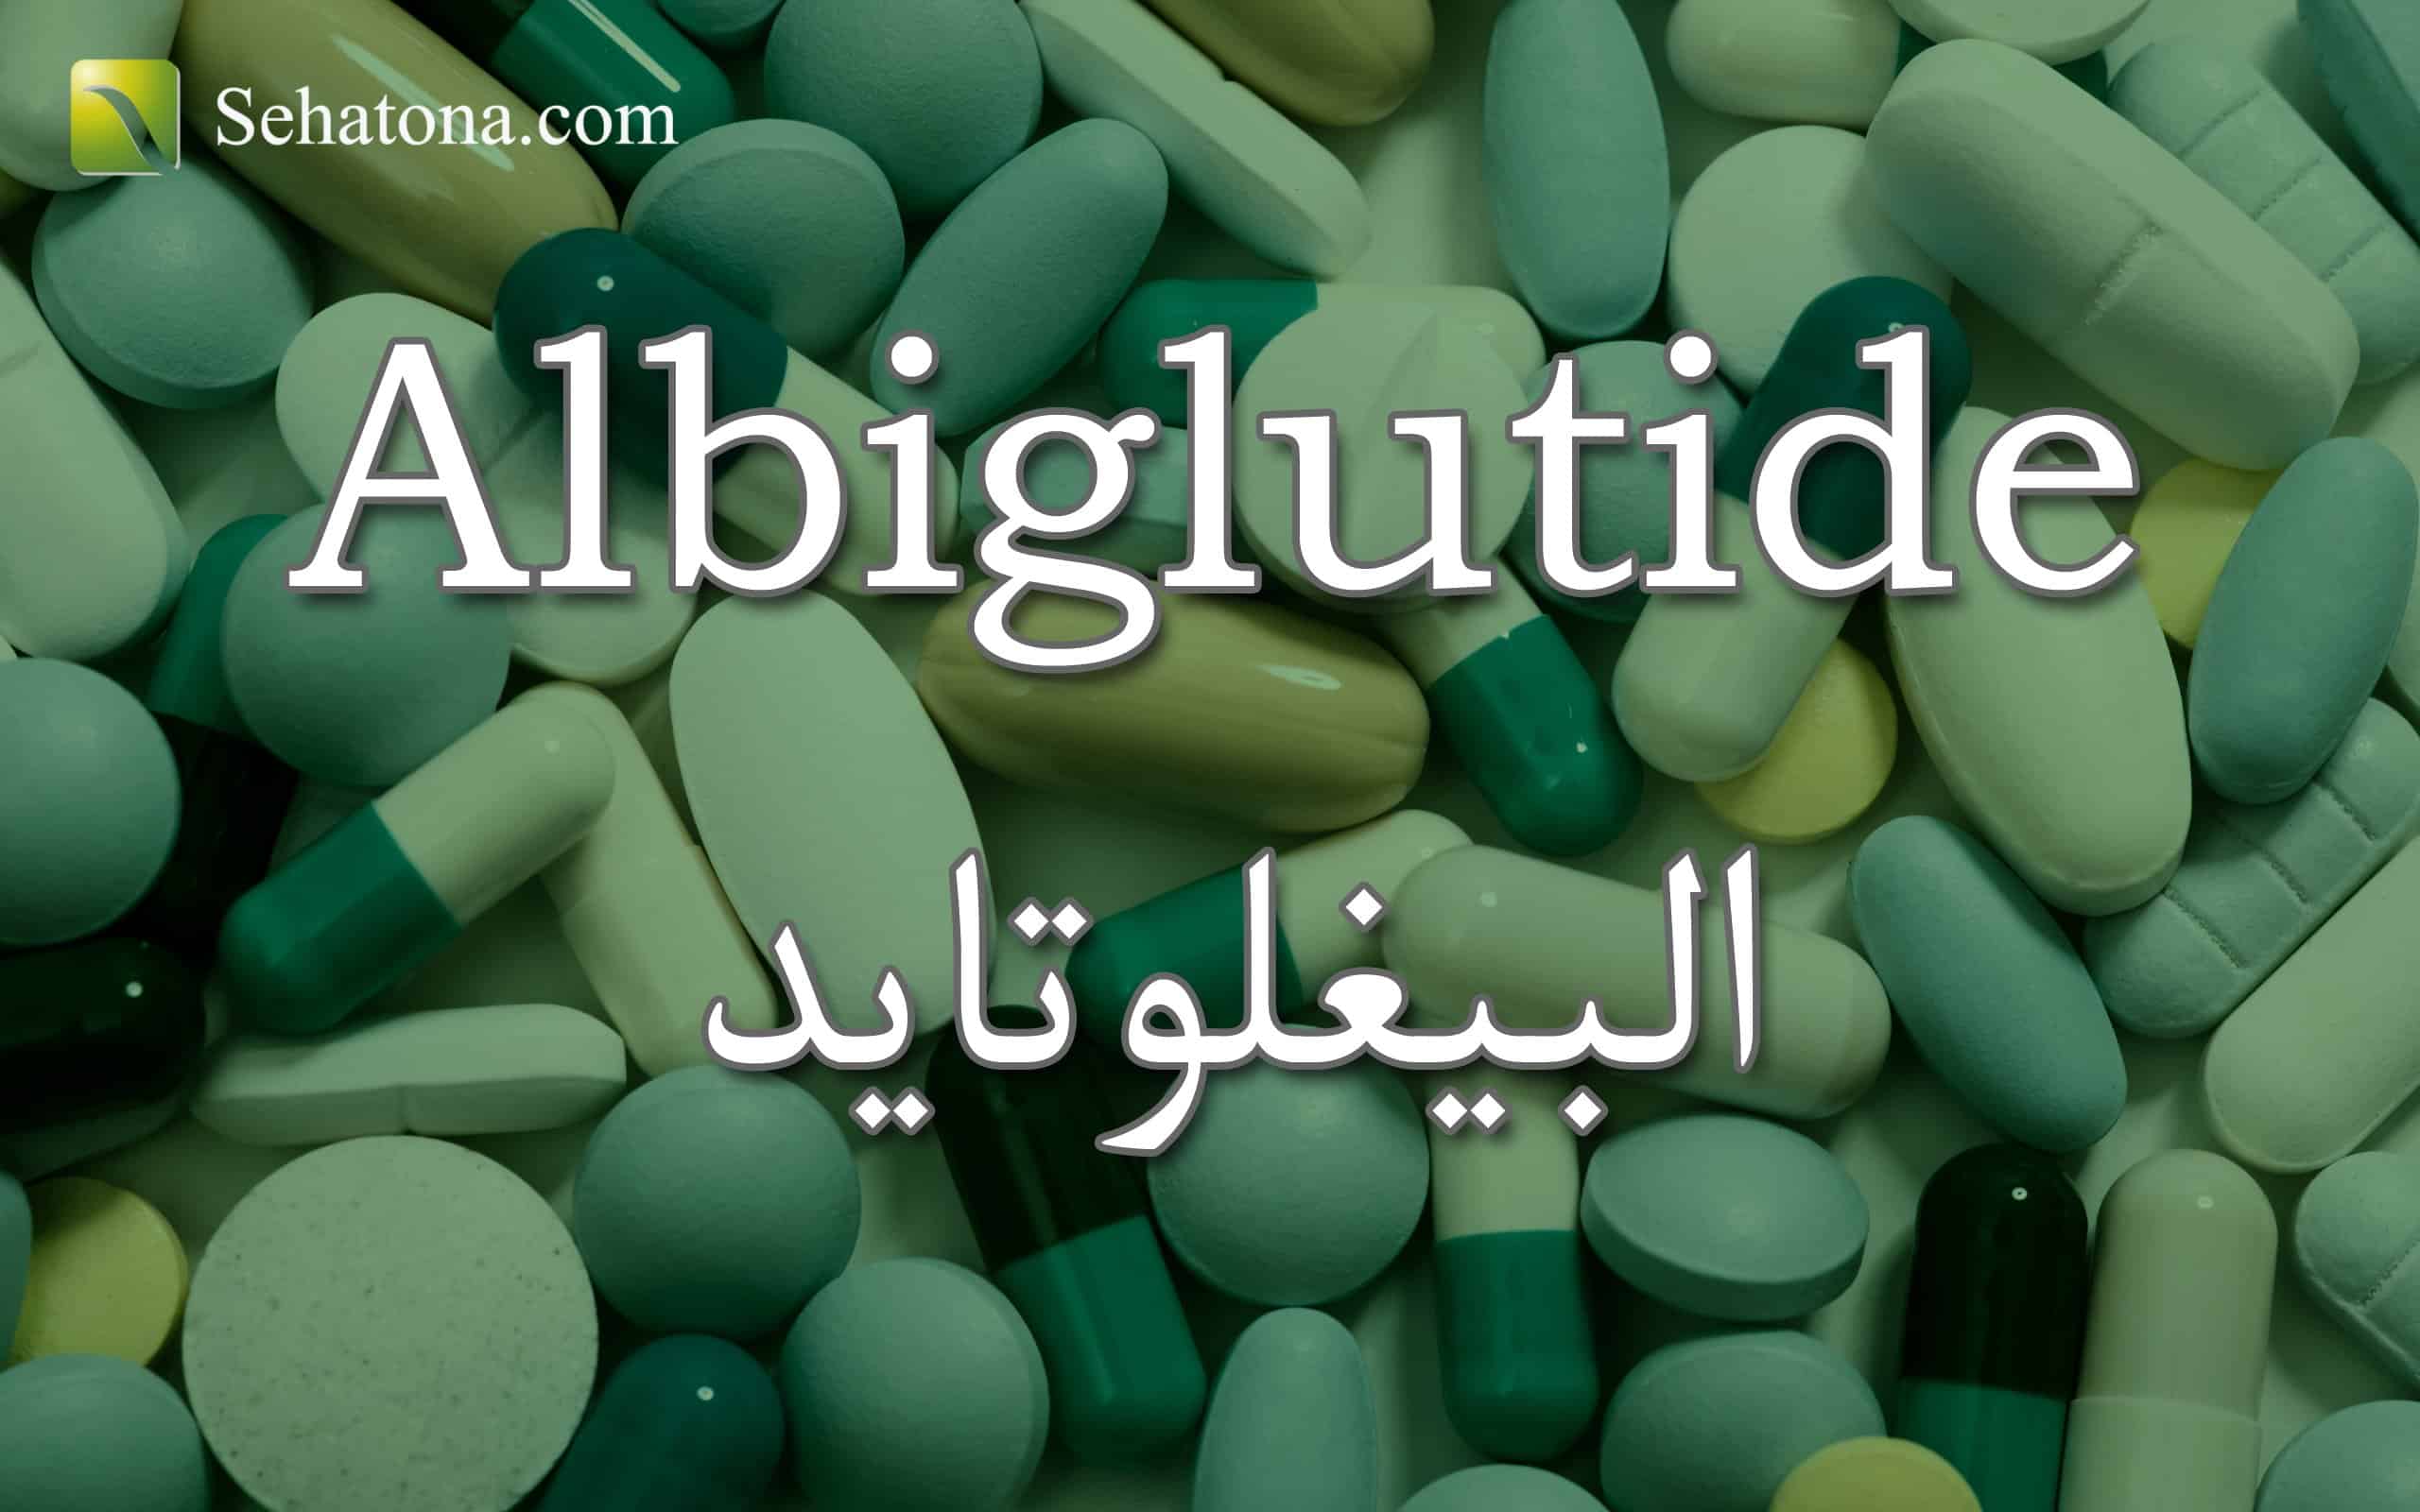 Albiglutide